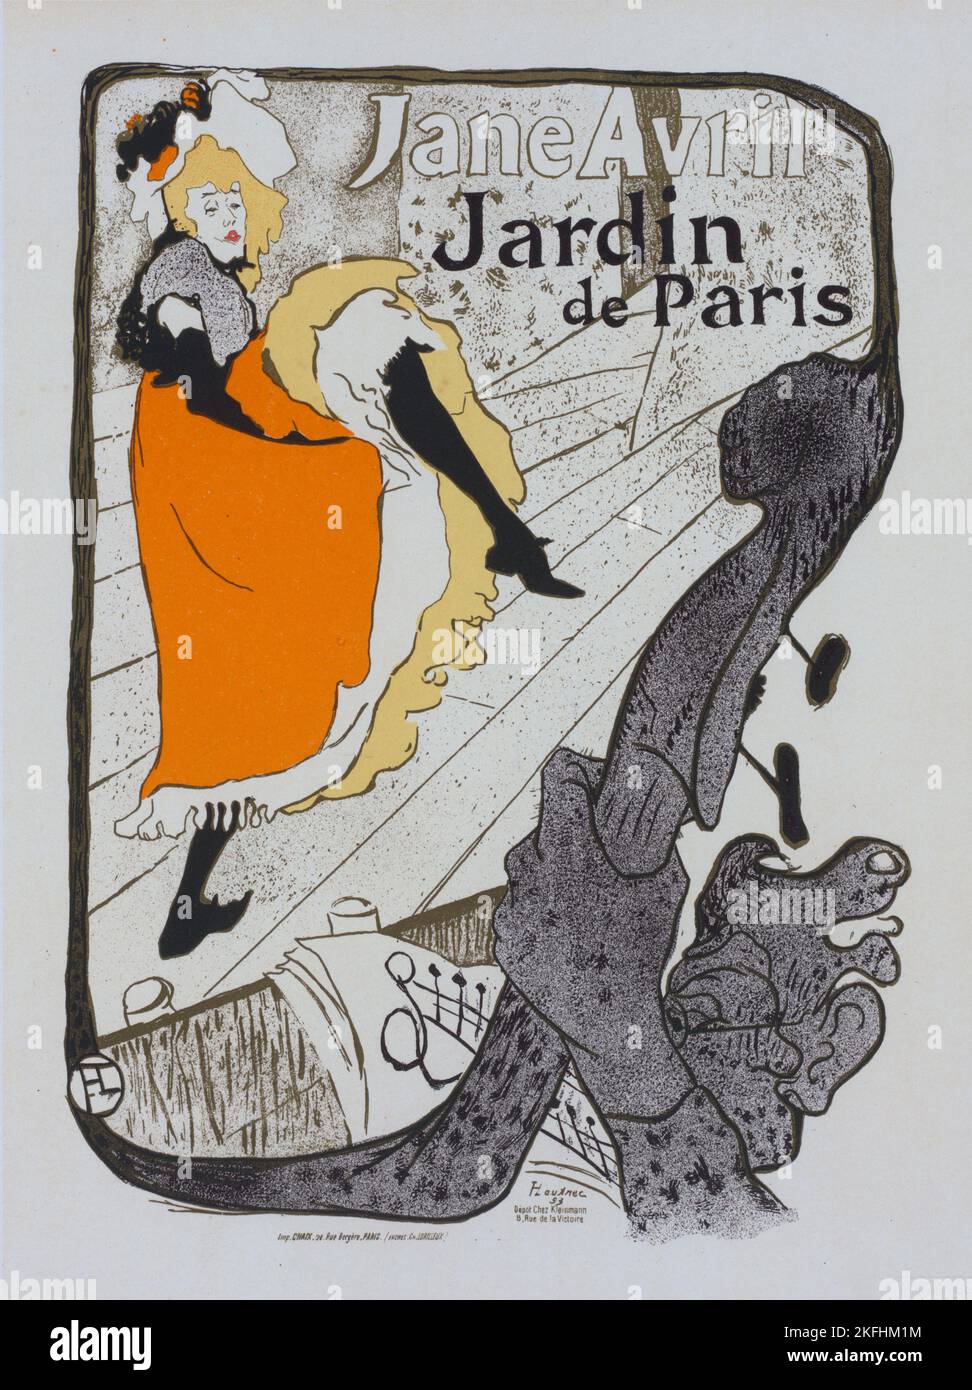 Affiche pour le jardin de Paris "Jane avril"., c1898. [Editeur: Imprimerie Chaix; lieu: Paris] Banque D'Images